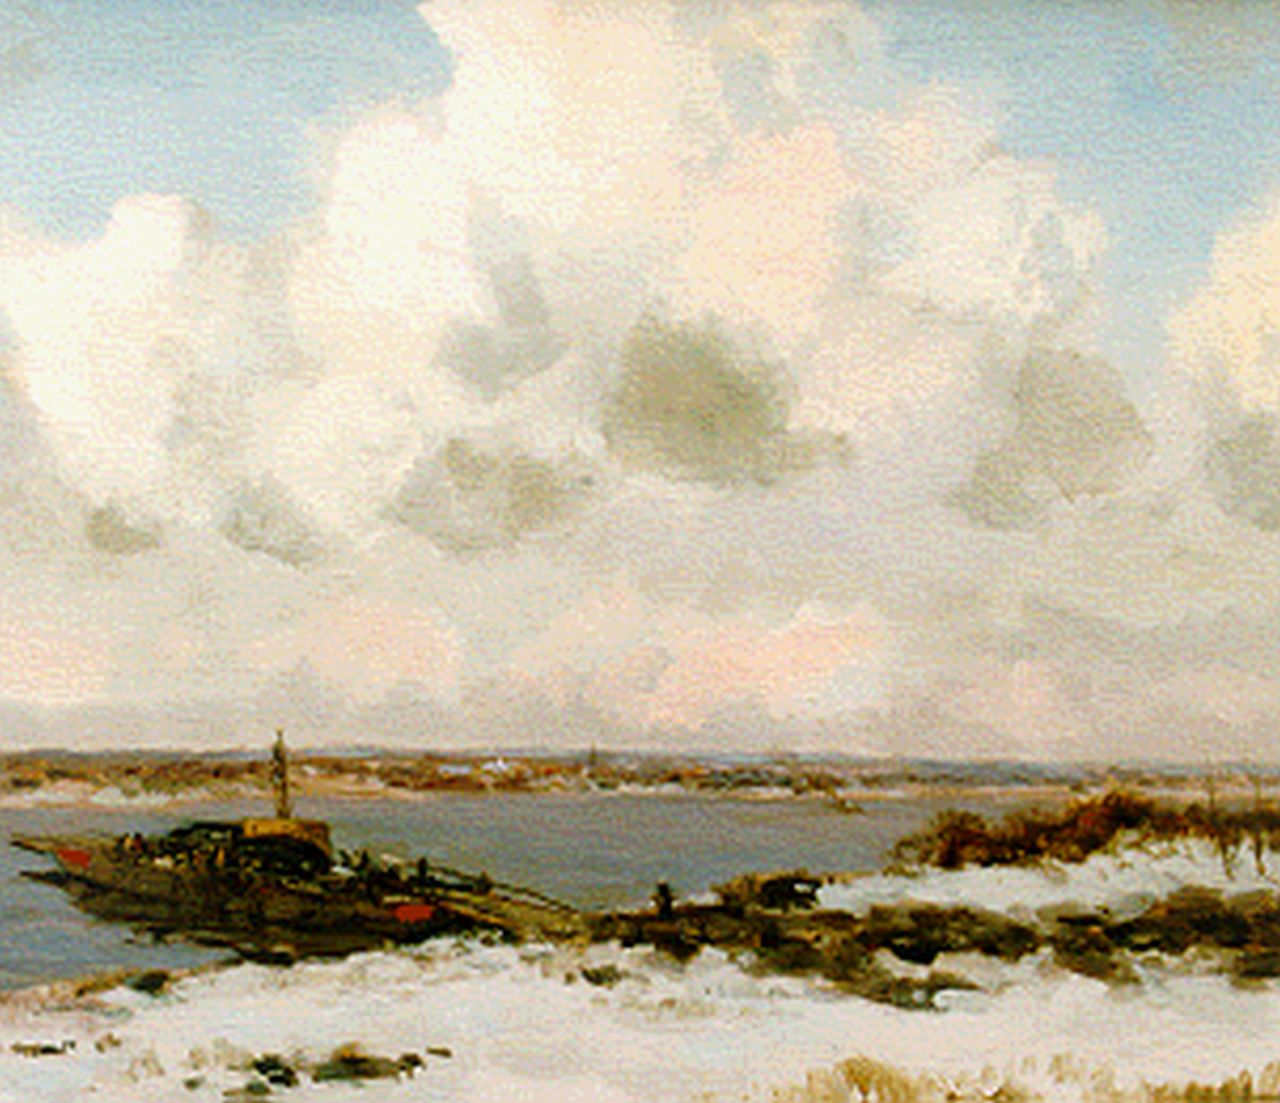 Jansen W.G.F.  | 'Willem' George Frederik Jansen, A ferry in winter, Öl auf Leinwand 60,5 x 90,5 cm, signed u.l.